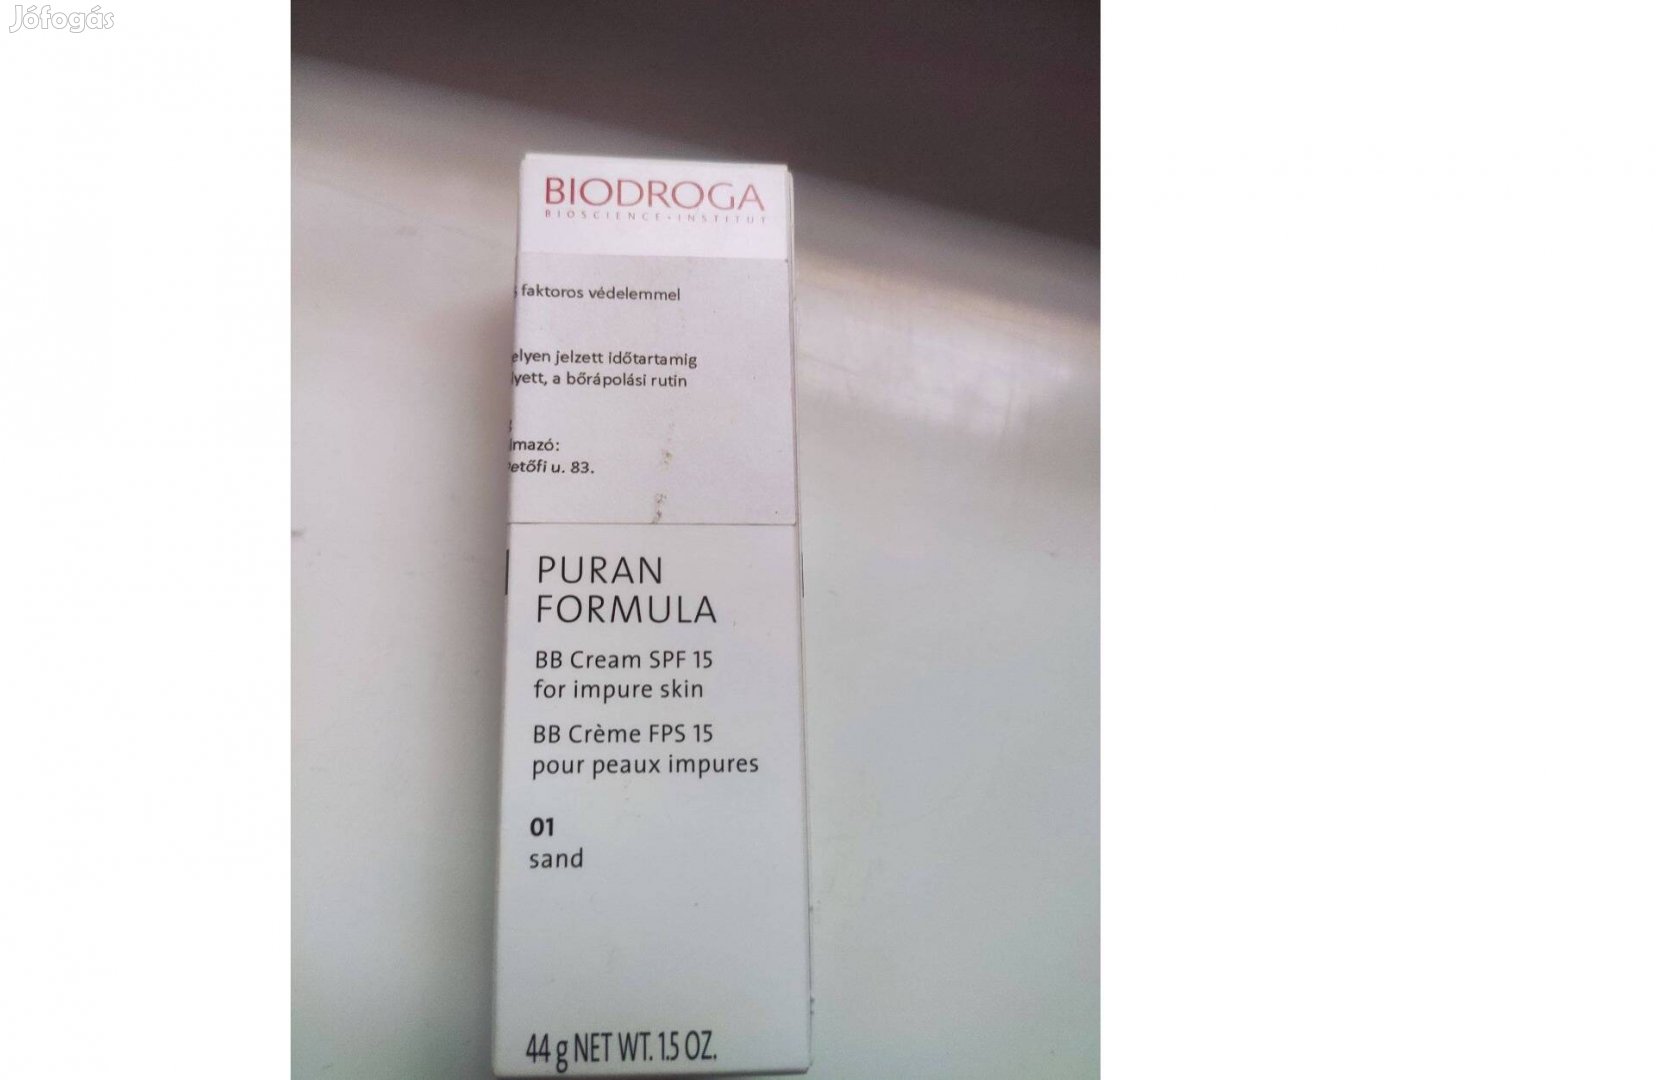 Biodroga Puran Formula BB krém SPF 15 -15 faktoros színezett ápoló